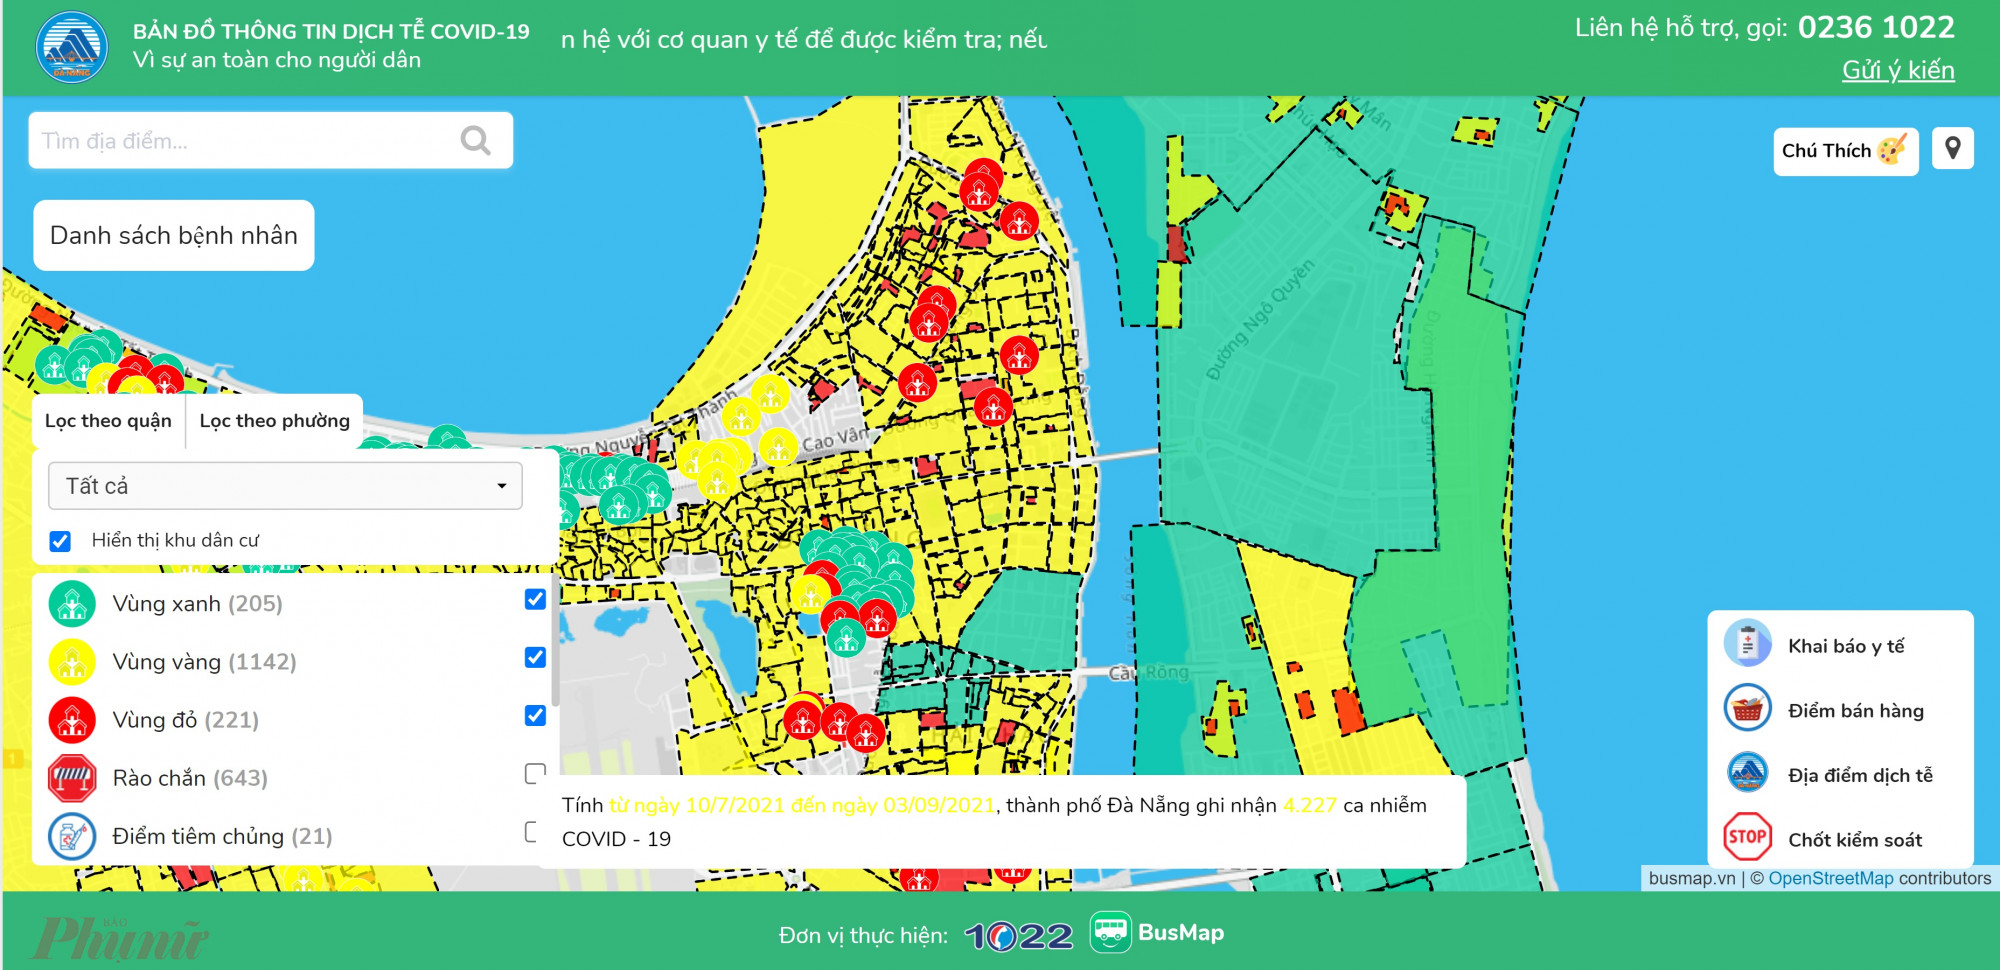 Bản đồ dịch tễ COVID-19 Đà Nẵng hiển thị các vùng đỏ, vàng, xanh